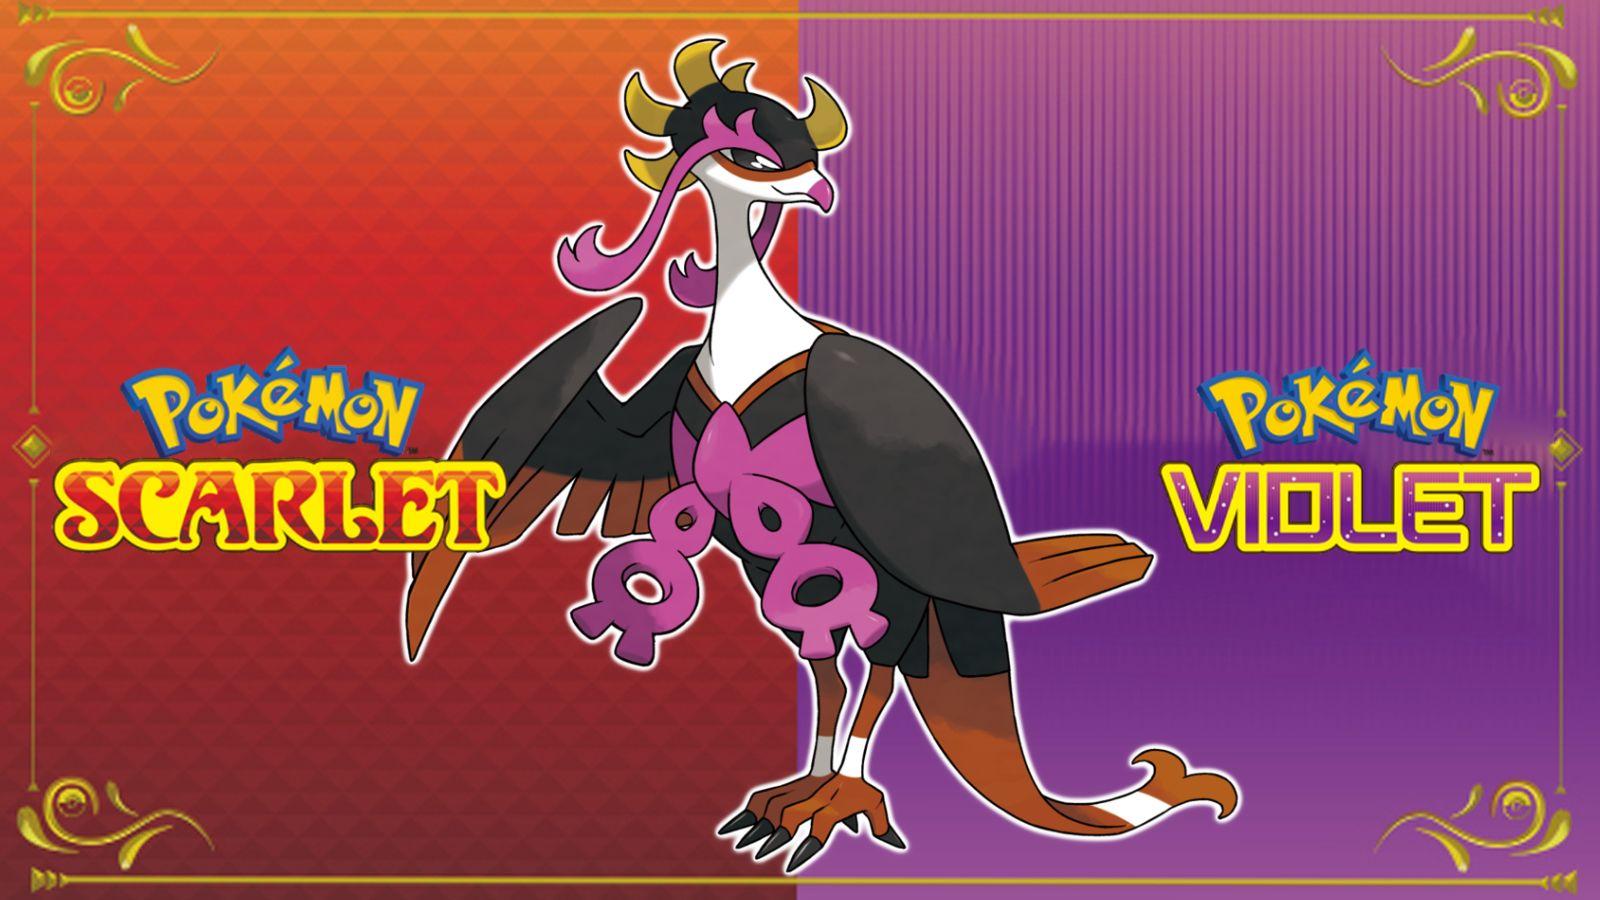 Pokémon Teal Mask version exclusives for Scarlet and Violet